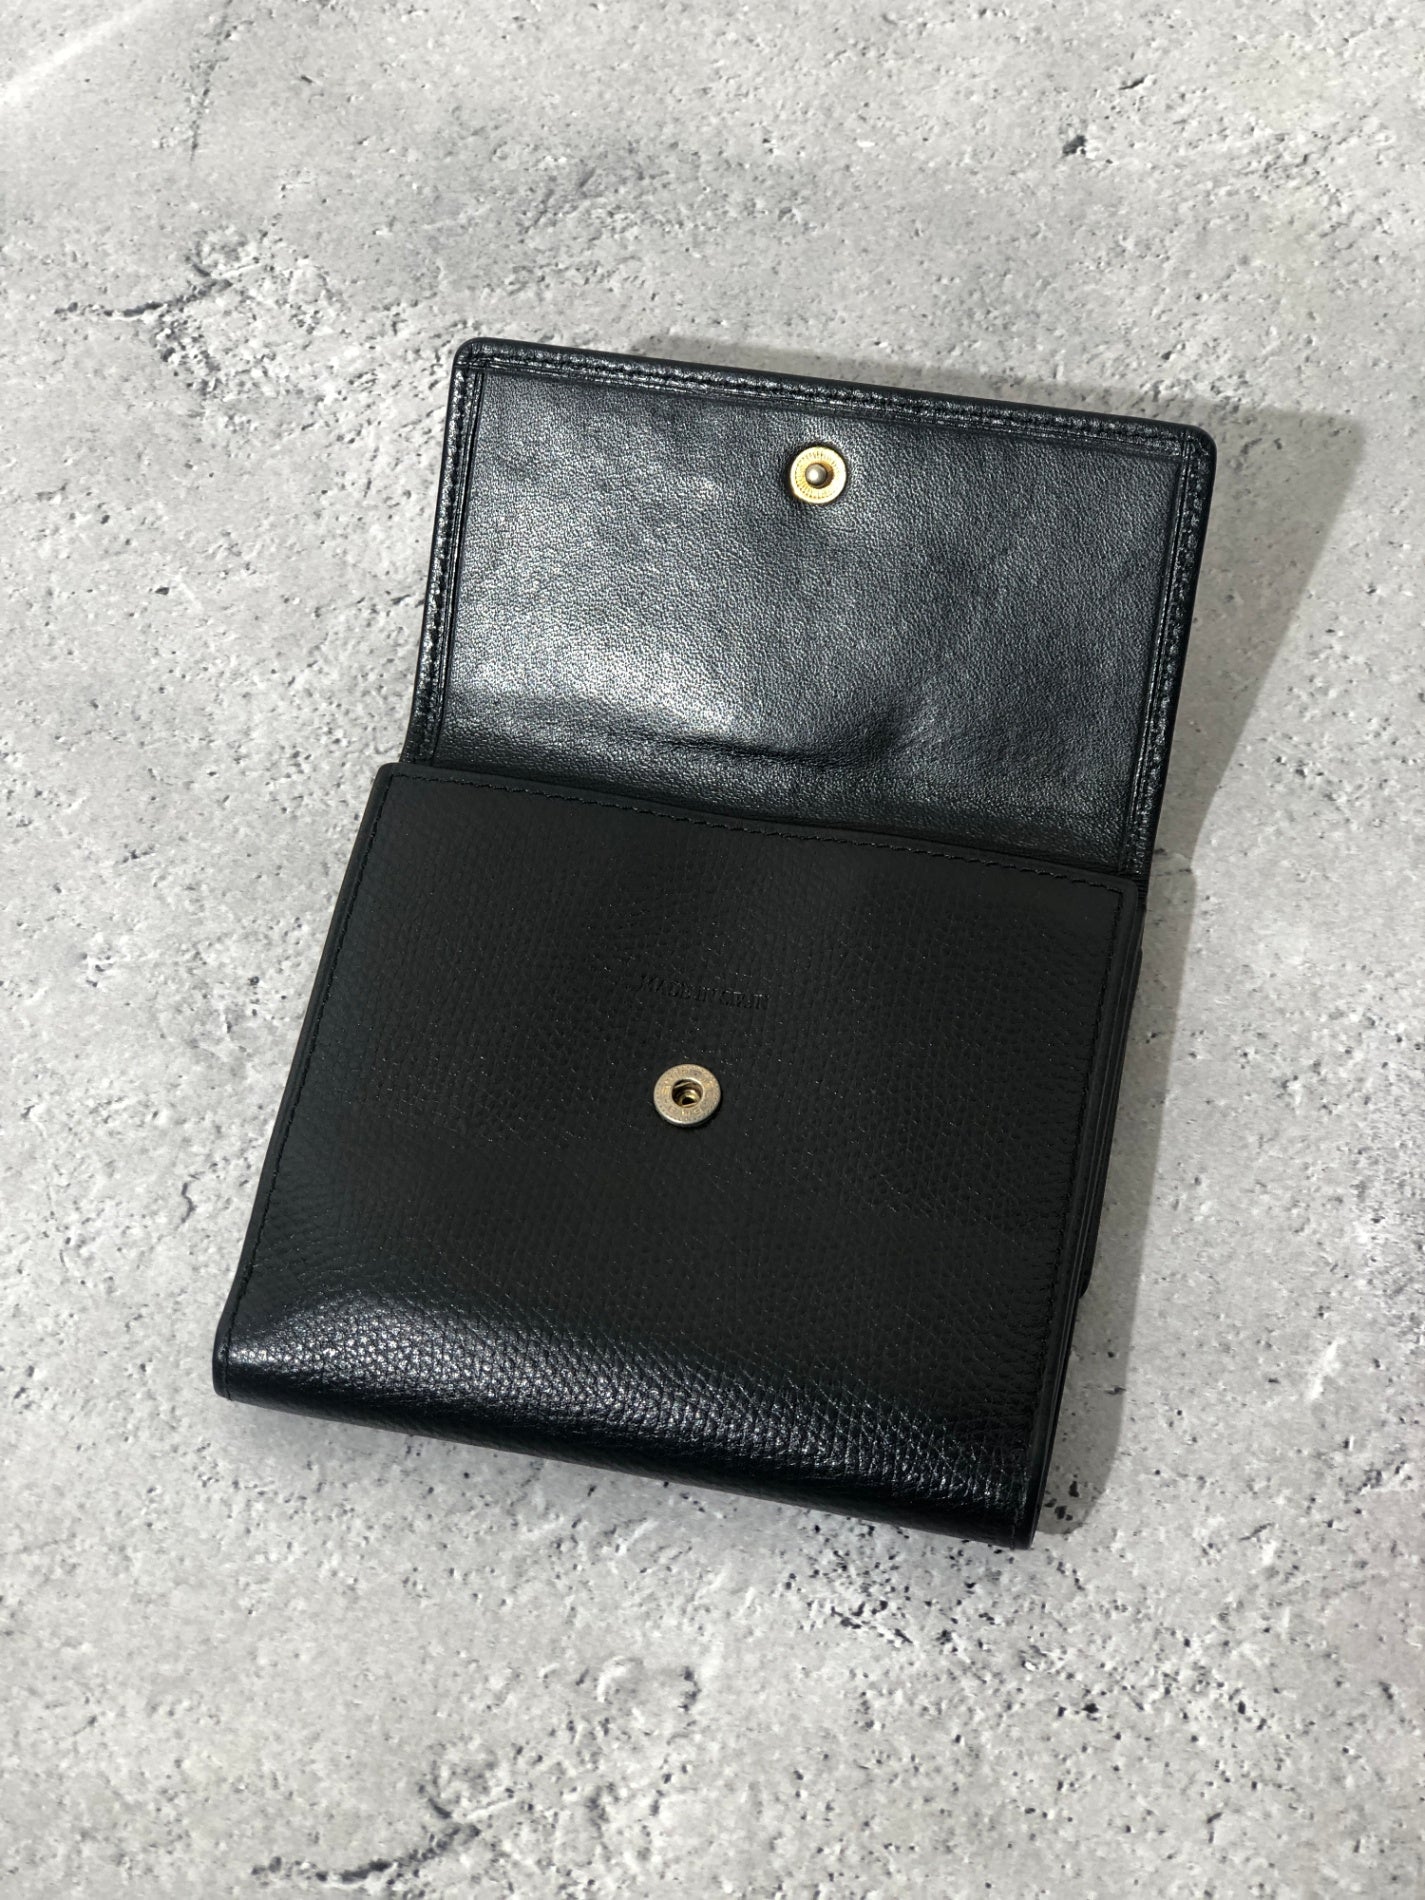 LOEWE Anagram Logo Leather Trifold Wallet Black Vintage i27f3r